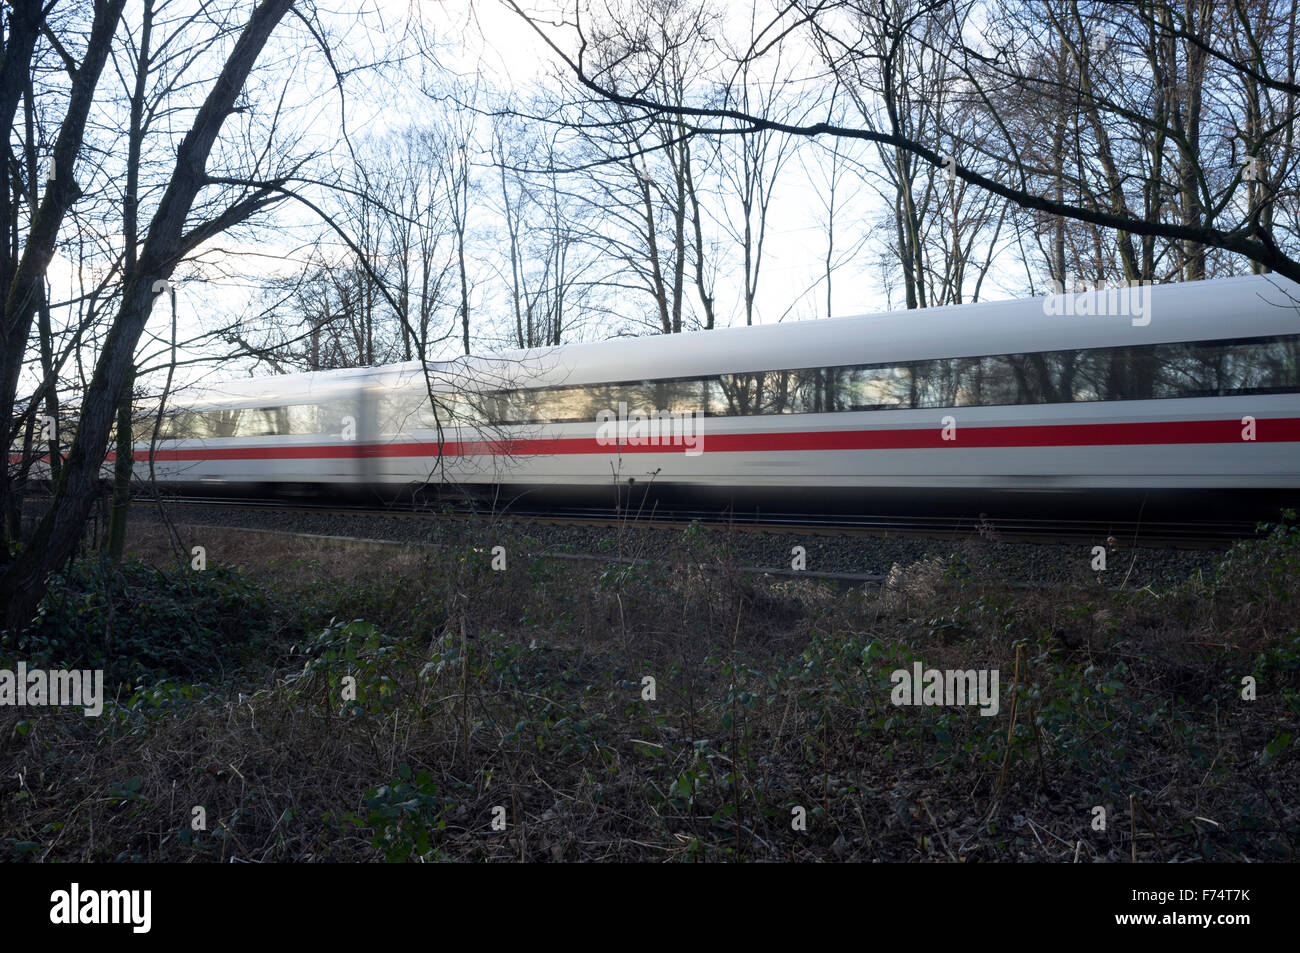 Le ferrovie tedesche InterCity ad alta velocità treno passeggeri, Leichlingen, Germania. Foto Stock